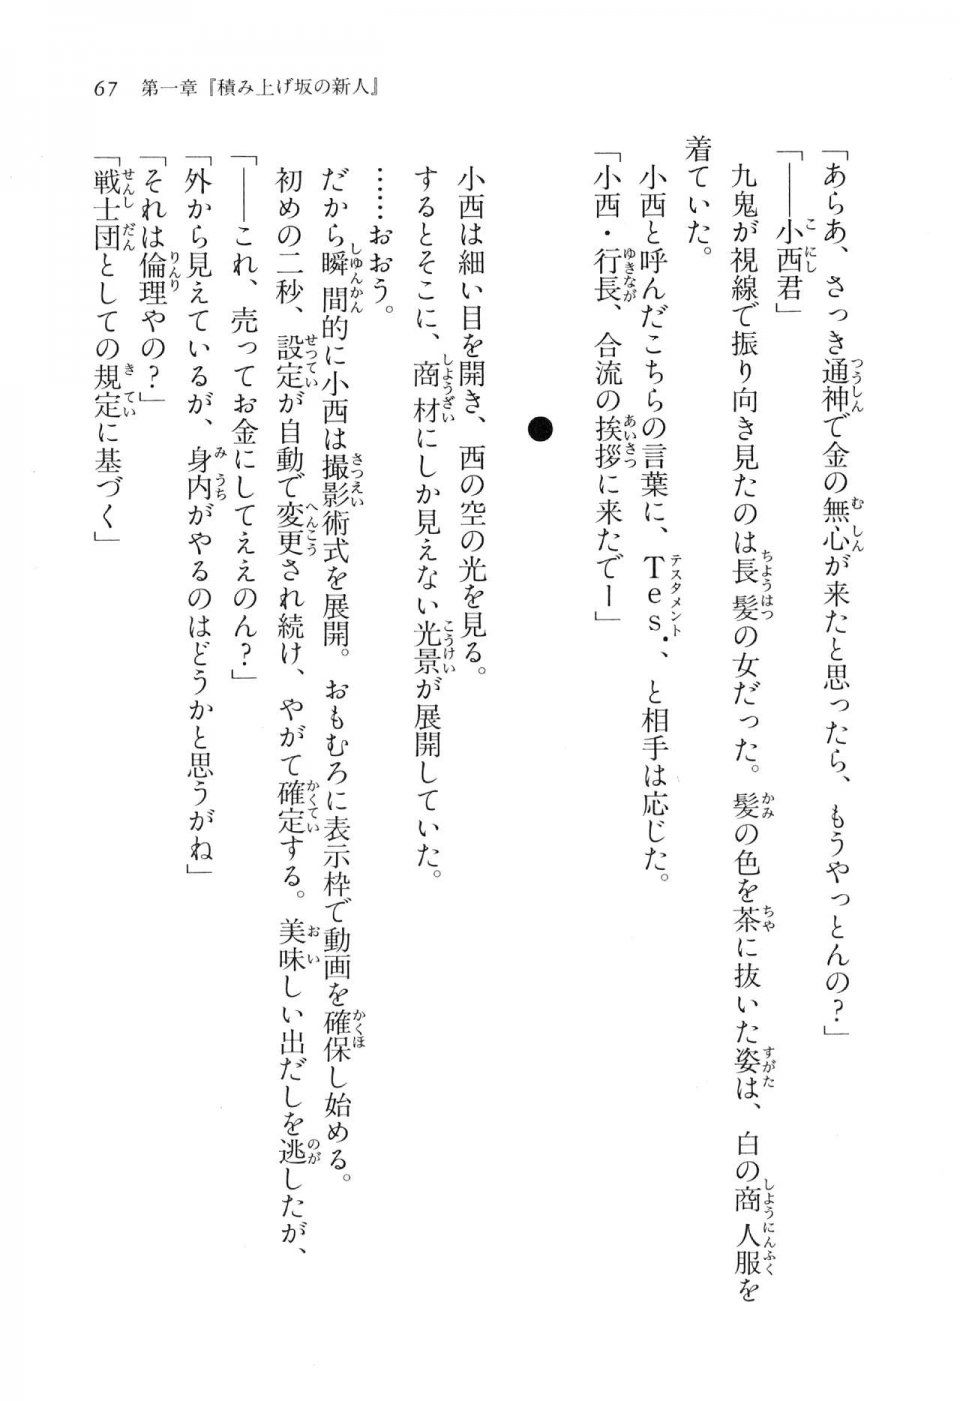 Kyoukai Senjou no Horizon LN Vol 16(7A) - Photo #67